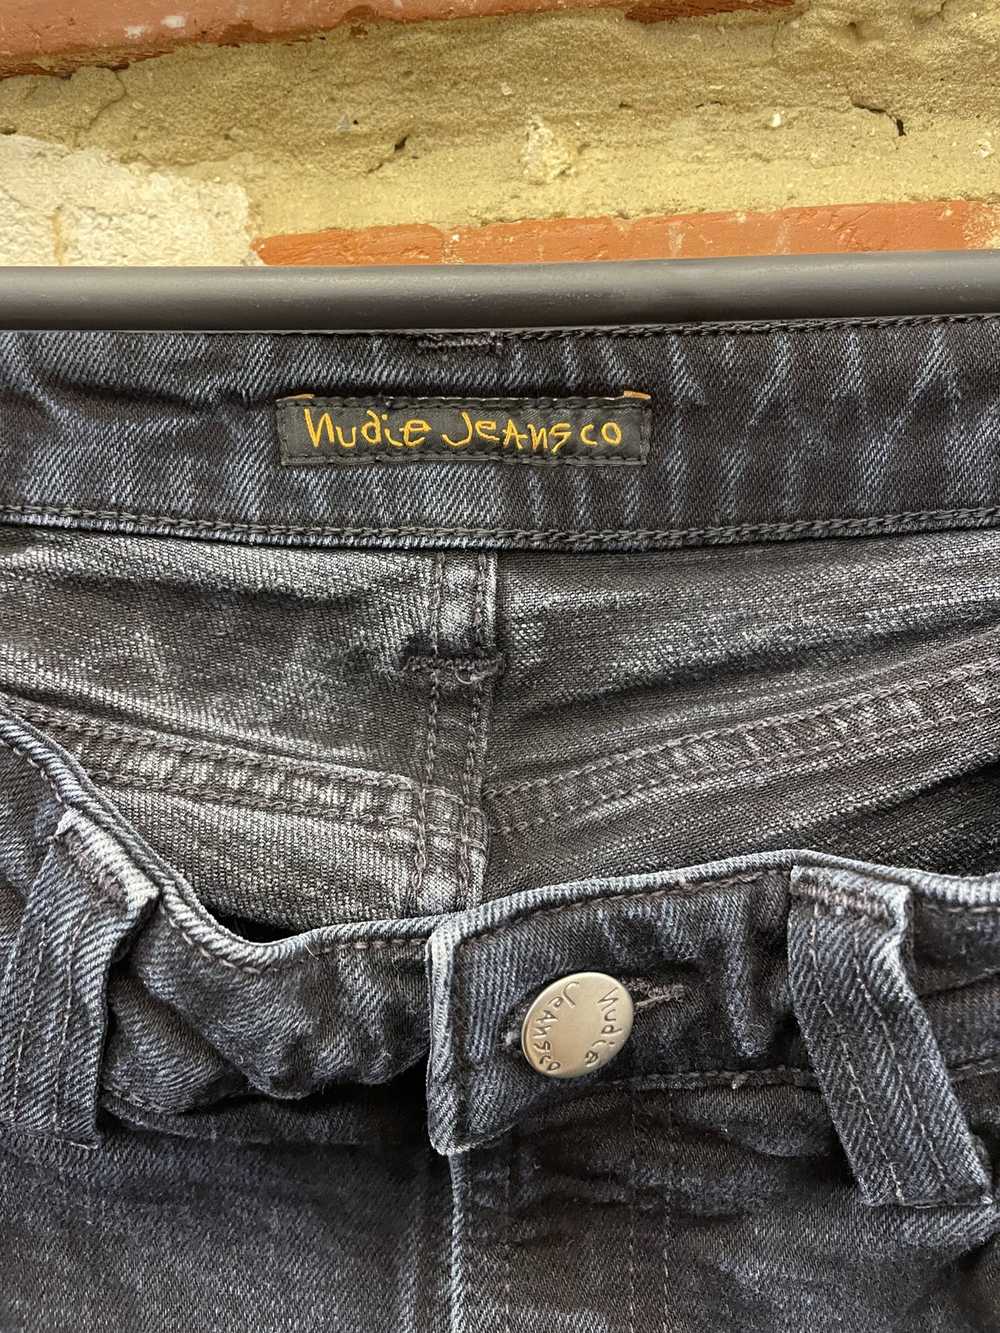 Nudie Jeans × Vintage Vintage Nudie Jeans Co Jeans - image 2